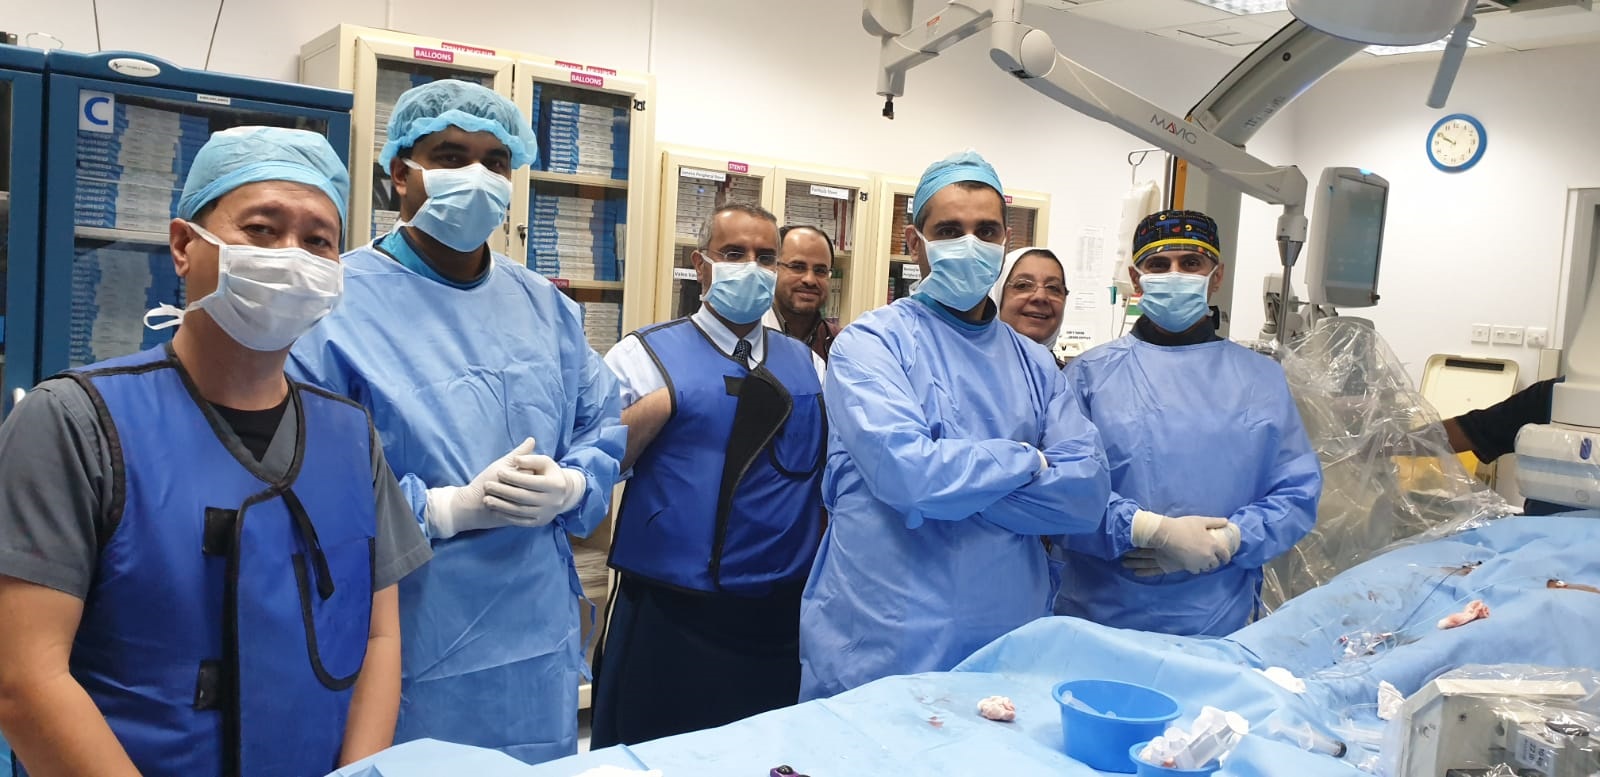 الفريق الطبي الكويتي الذي اجرى عملية تركيب صمام جراحي لاول مرة في الشرق الاوسط